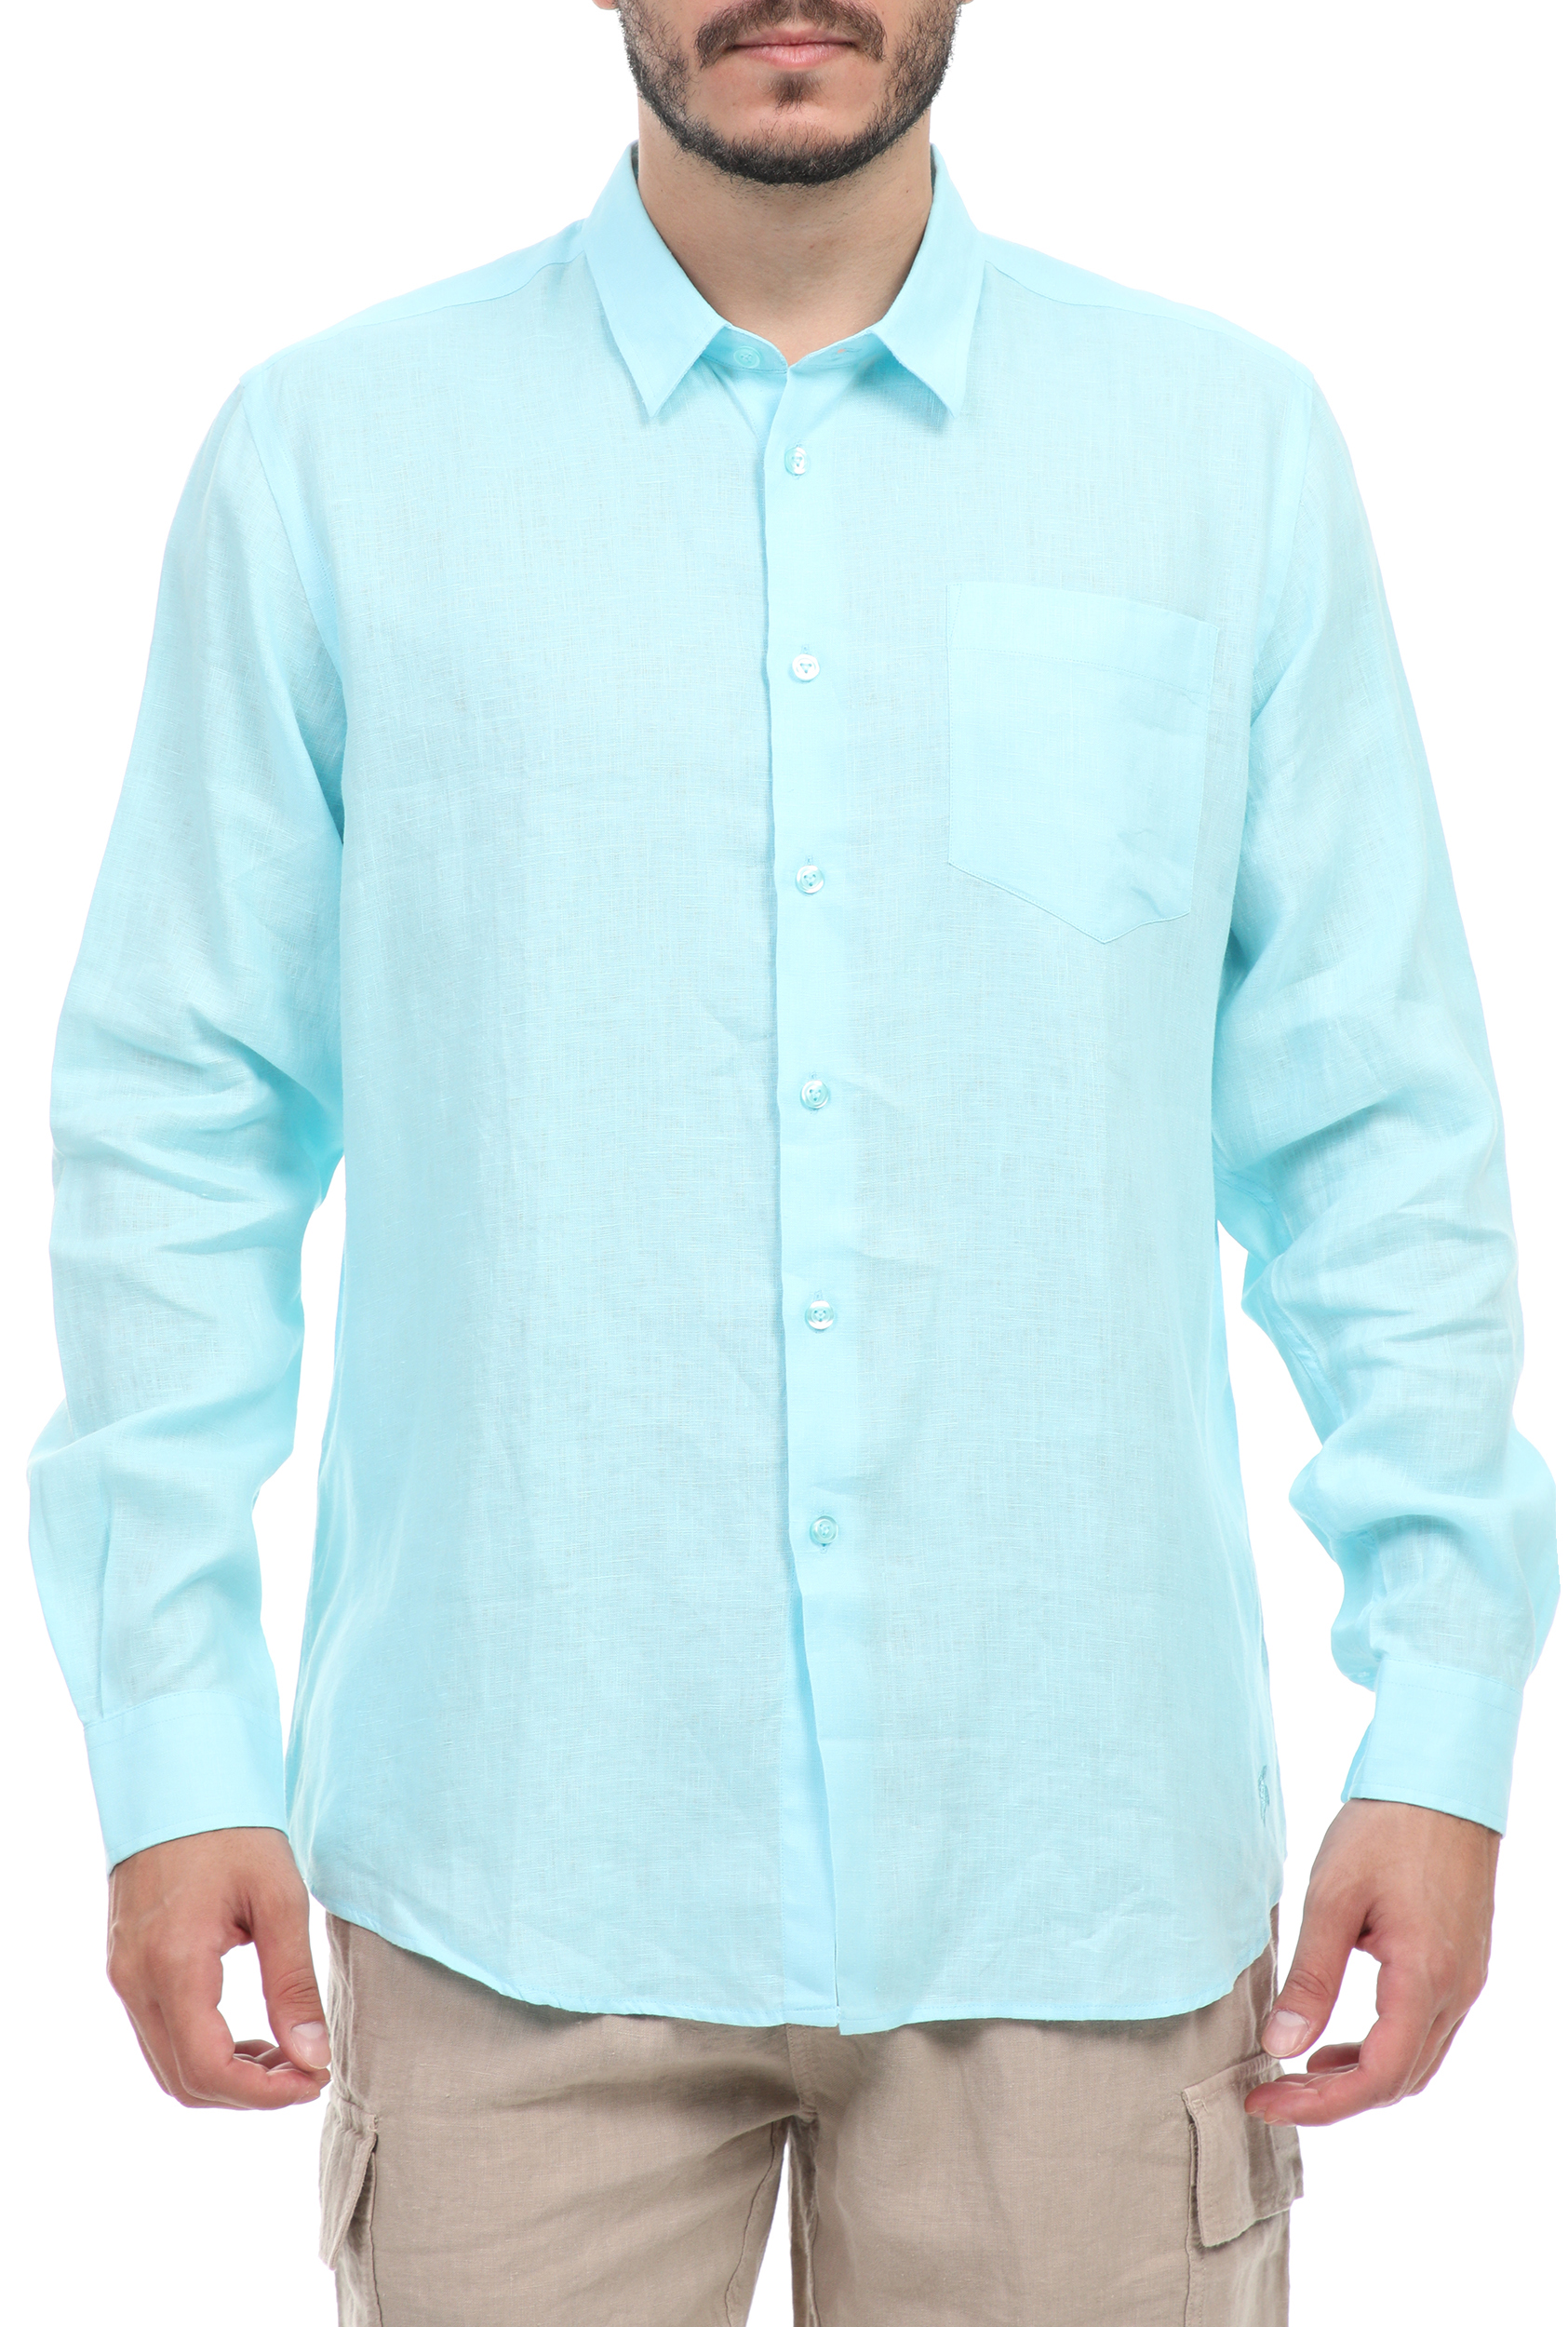 Ανδρικά/Ρούχα/Πουκάμισα/Μακρυμάνικα VILEBREQUIN - Ανδρικό λινό πουκάμισο VILEBREQUIN CAROUBIS μπλε